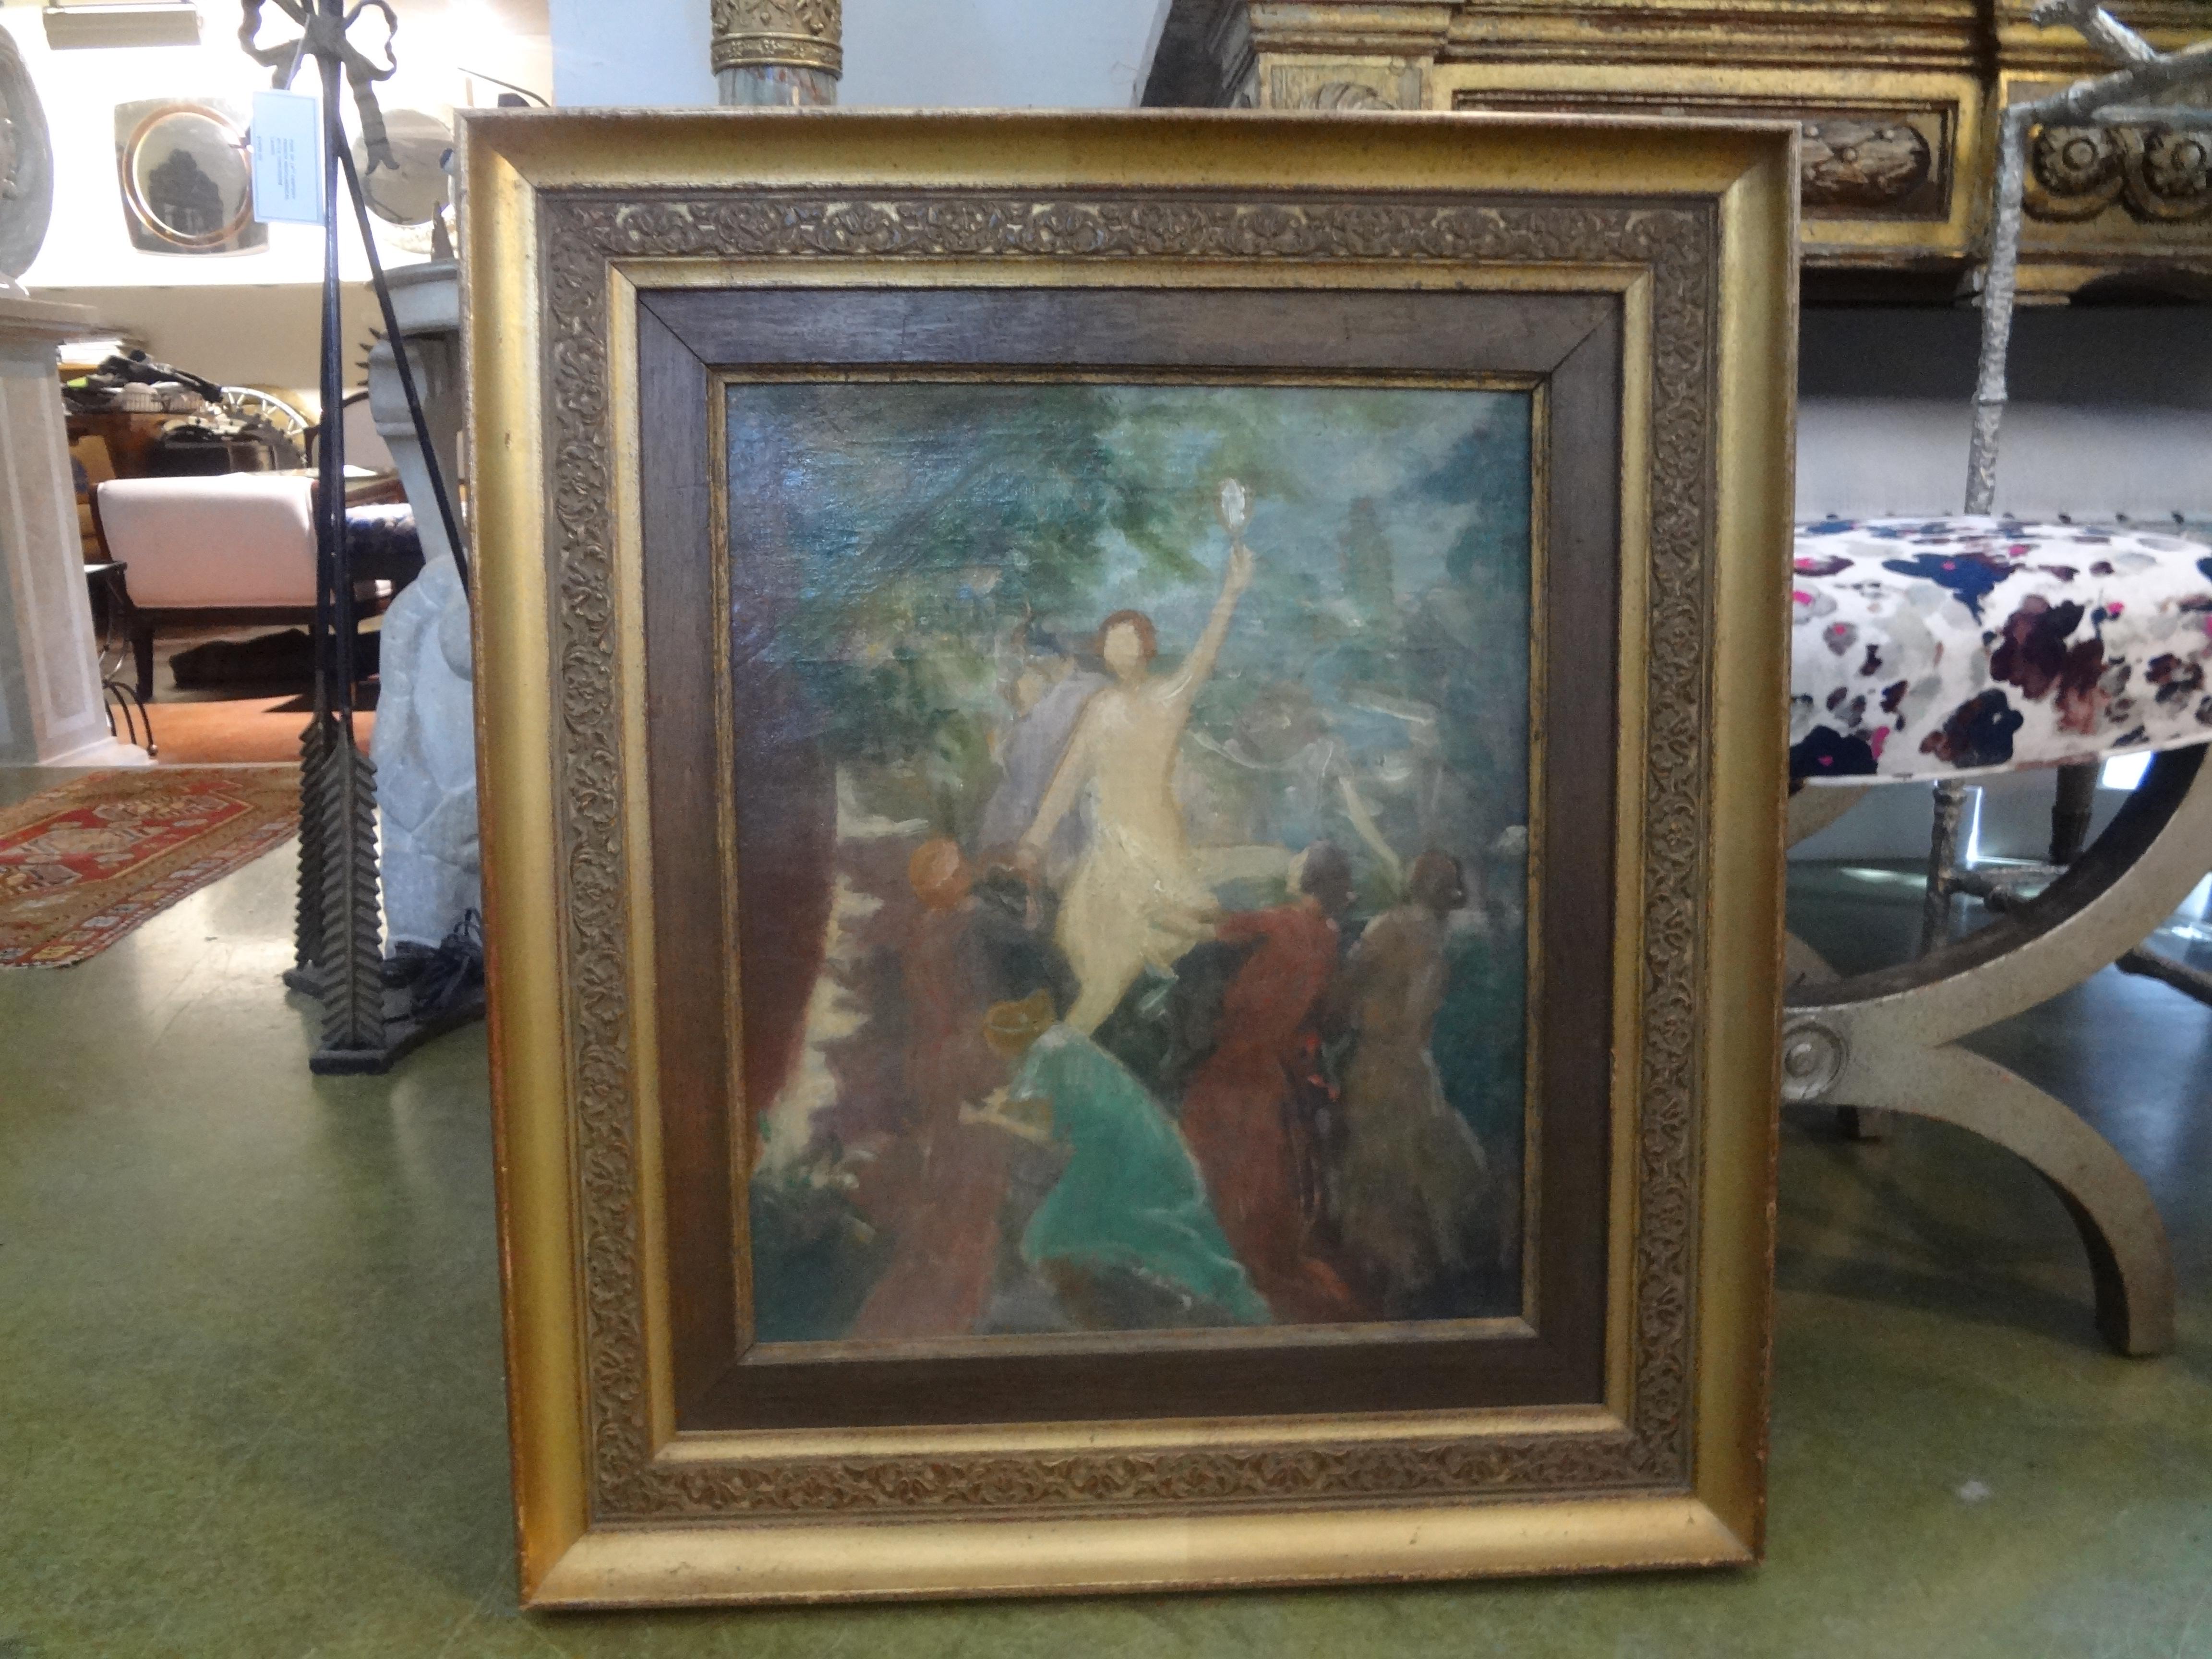 Superbe huile sur toile impressionniste encadrée du 19ème siècle. Cette belle peinture à l'huile française a été exécutée à Paris dans le dernier quart du XIXe siècle. Bien que non signée, elle est clairement l'œuvre d'un artiste talentueux.